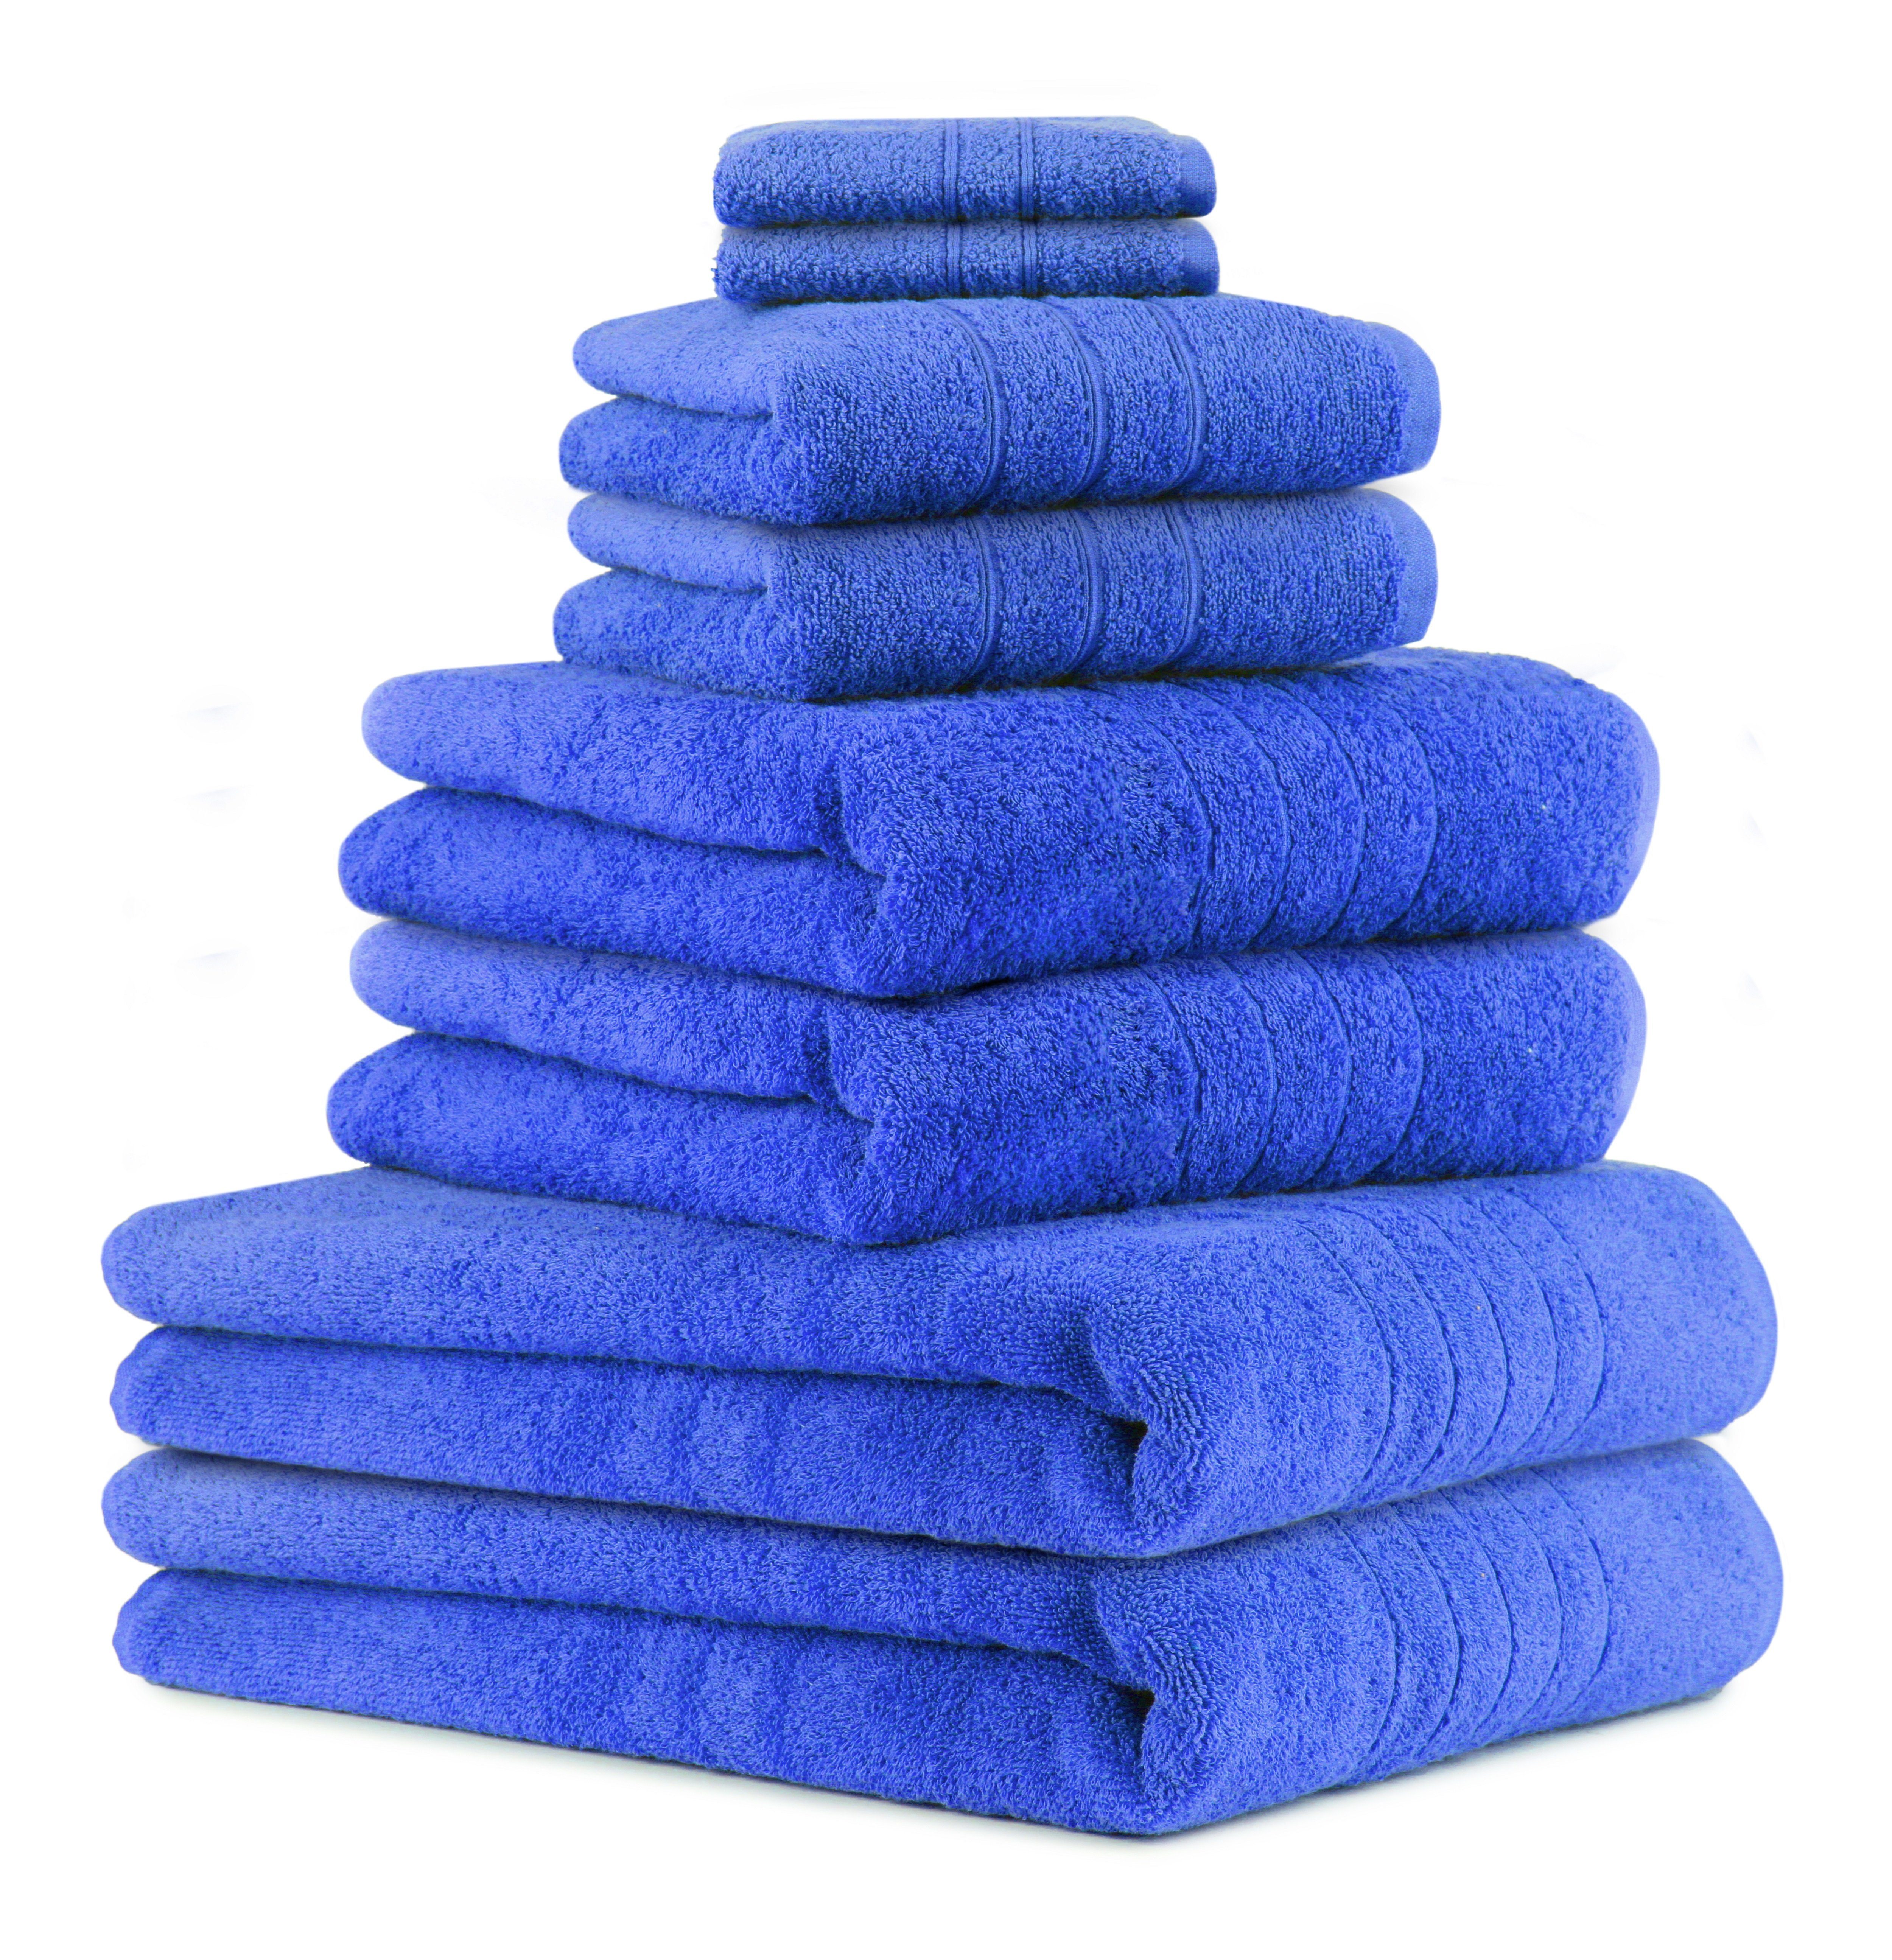 Betz Handtuch Set 8-TLG Handtuch-Set Deluxe 100% Baumwolle 2 Badetücher 2 Duschtücher 2 Handtücher 2 Seiftücher, 100% Baumwolle, (8-tlg) blau | Handtuch-Sets